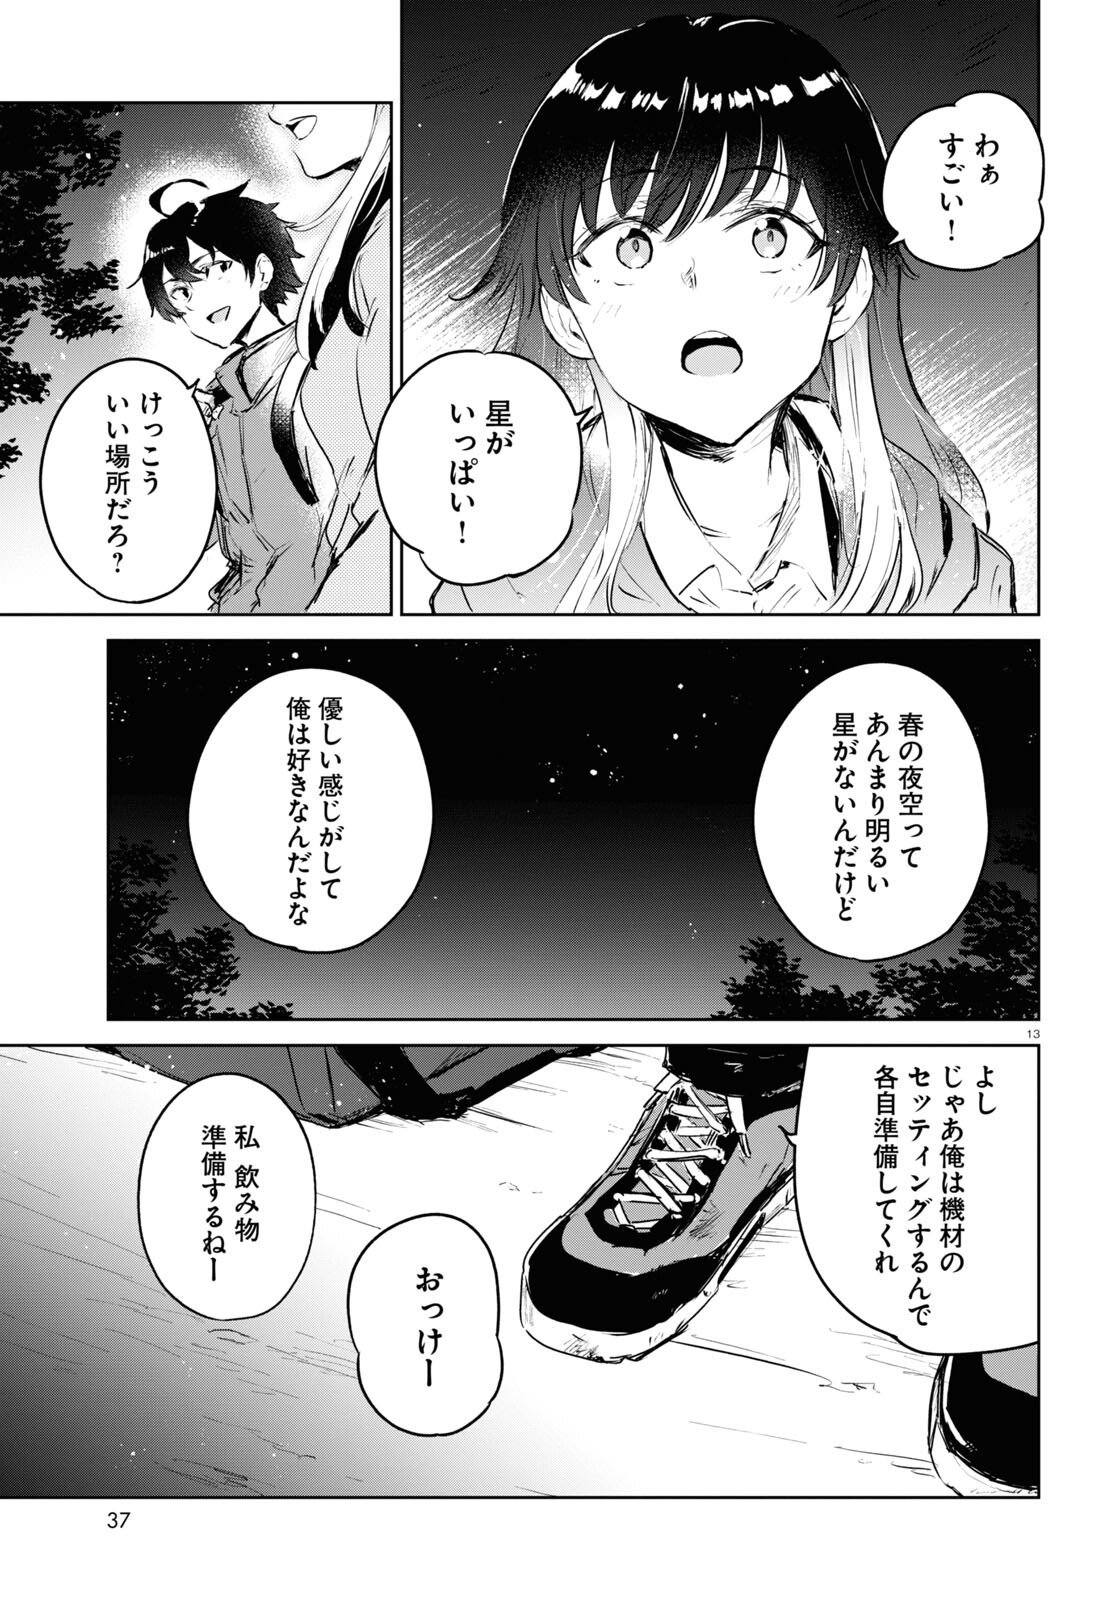 Ashita, Hadashi de Koi. - Chapter 7 - Page 13